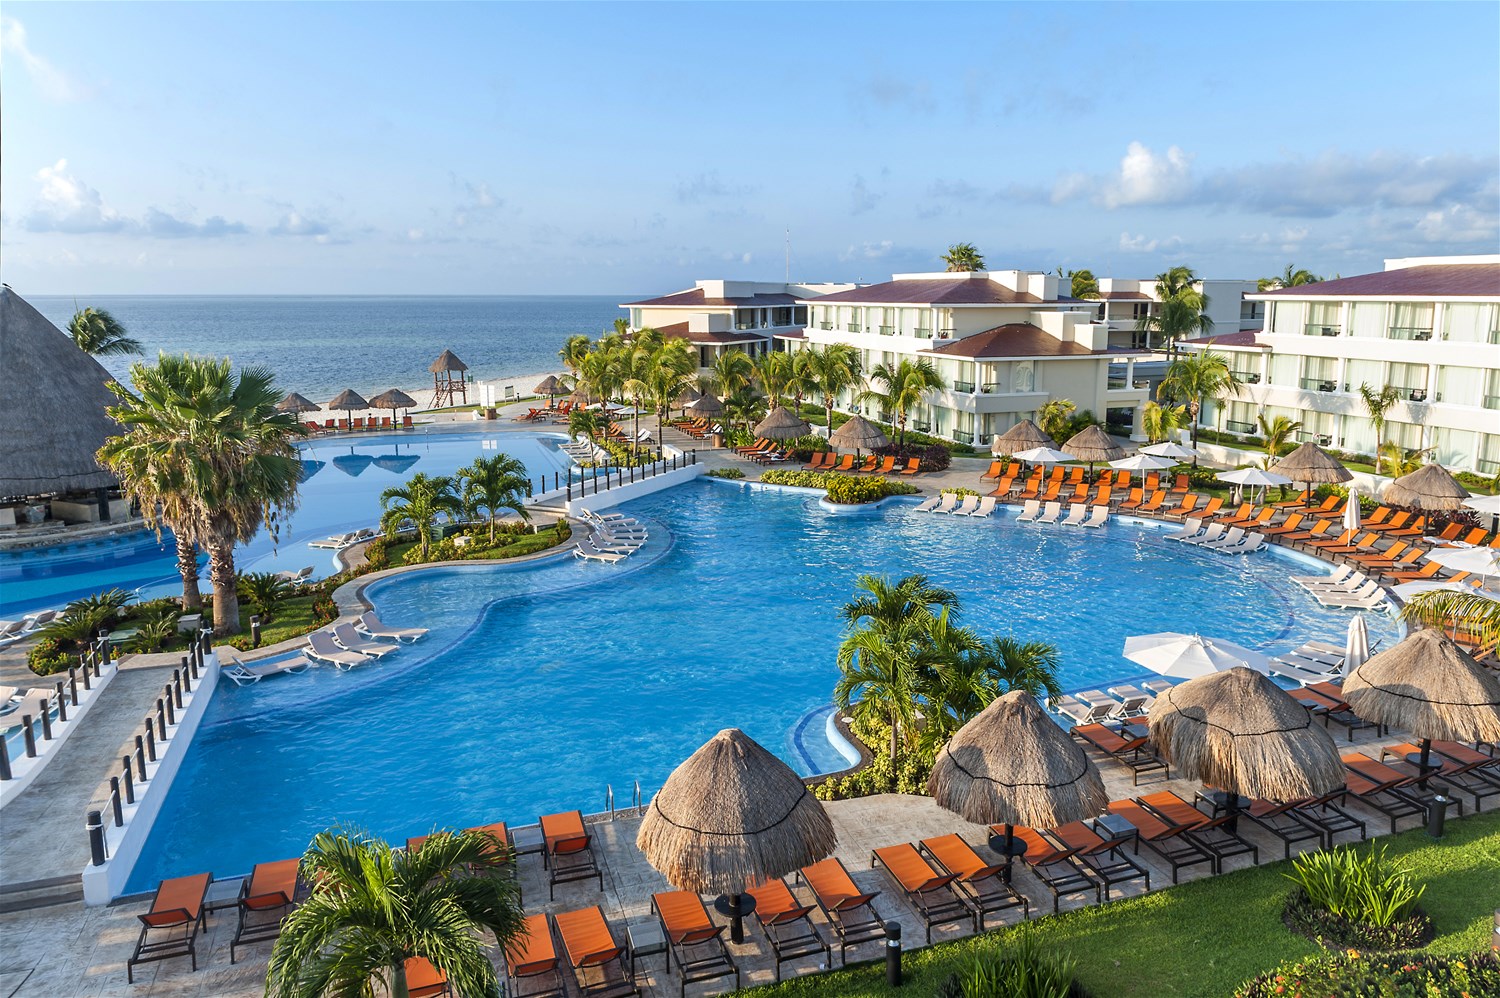 Moon Palace Cancun, Cancun & Riviera Maya Beaches, Mexico ...